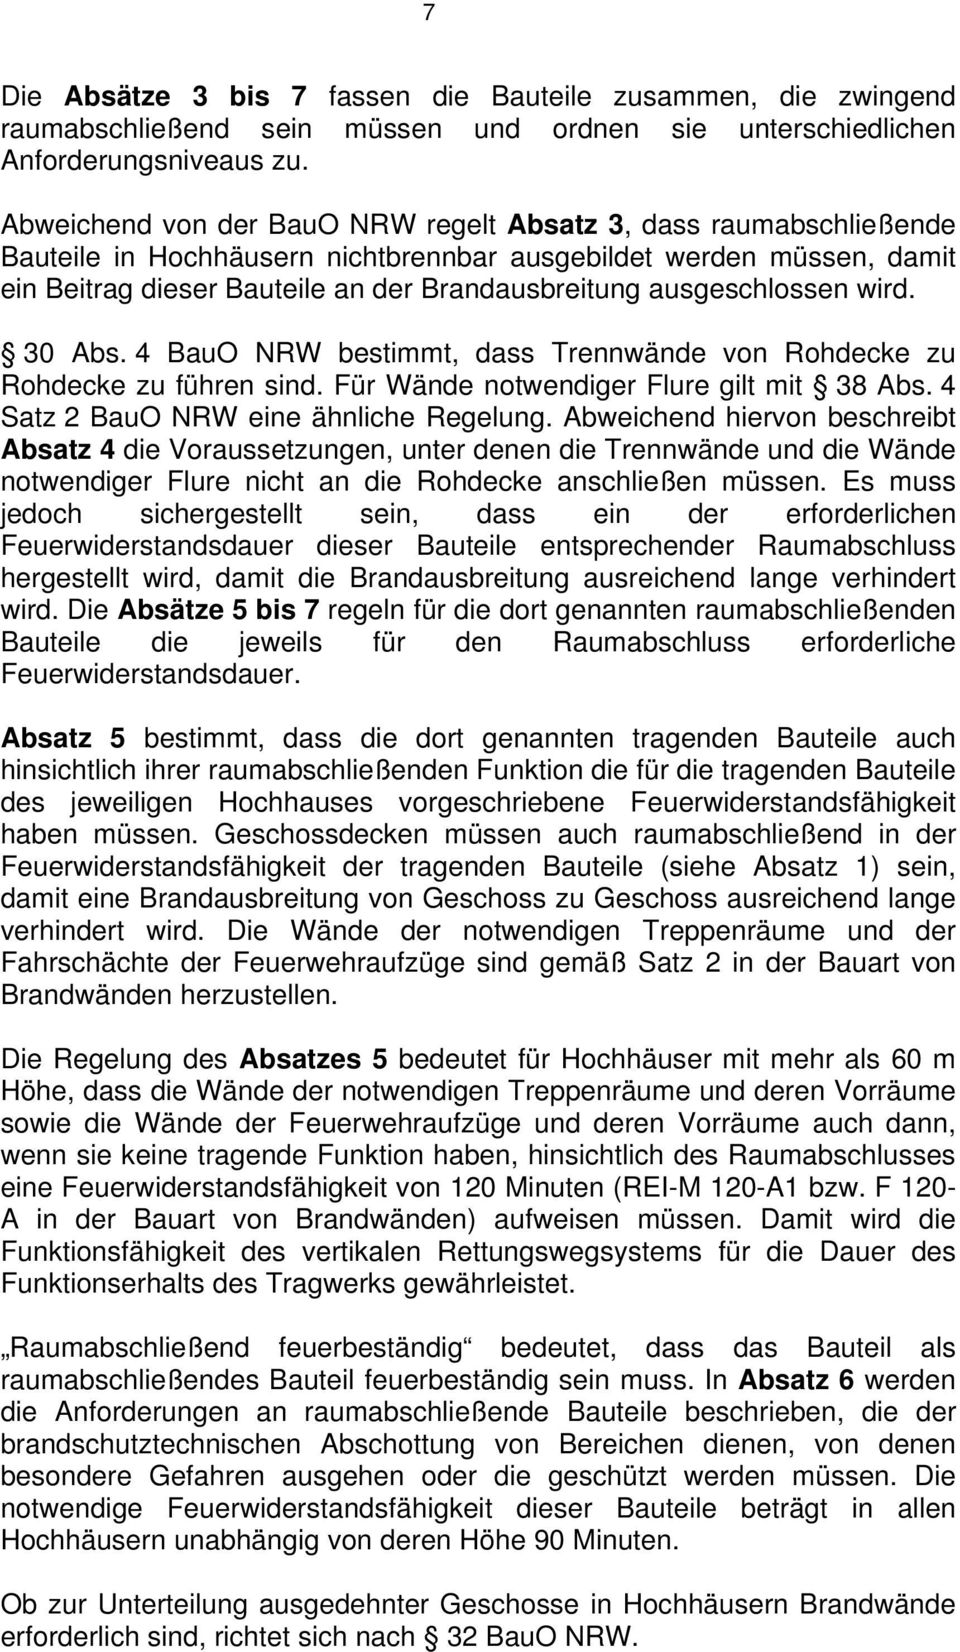 ausgeschlossen wird. 30 Abs. 4 BauO NRW bestimmt, dass Trennwände von Rohdecke zu Rohdecke zu führen sind. Für Wände notwendiger Flure gilt mit 38 Abs. 4 Satz 2 BauO NRW eine ähnliche Regelung.